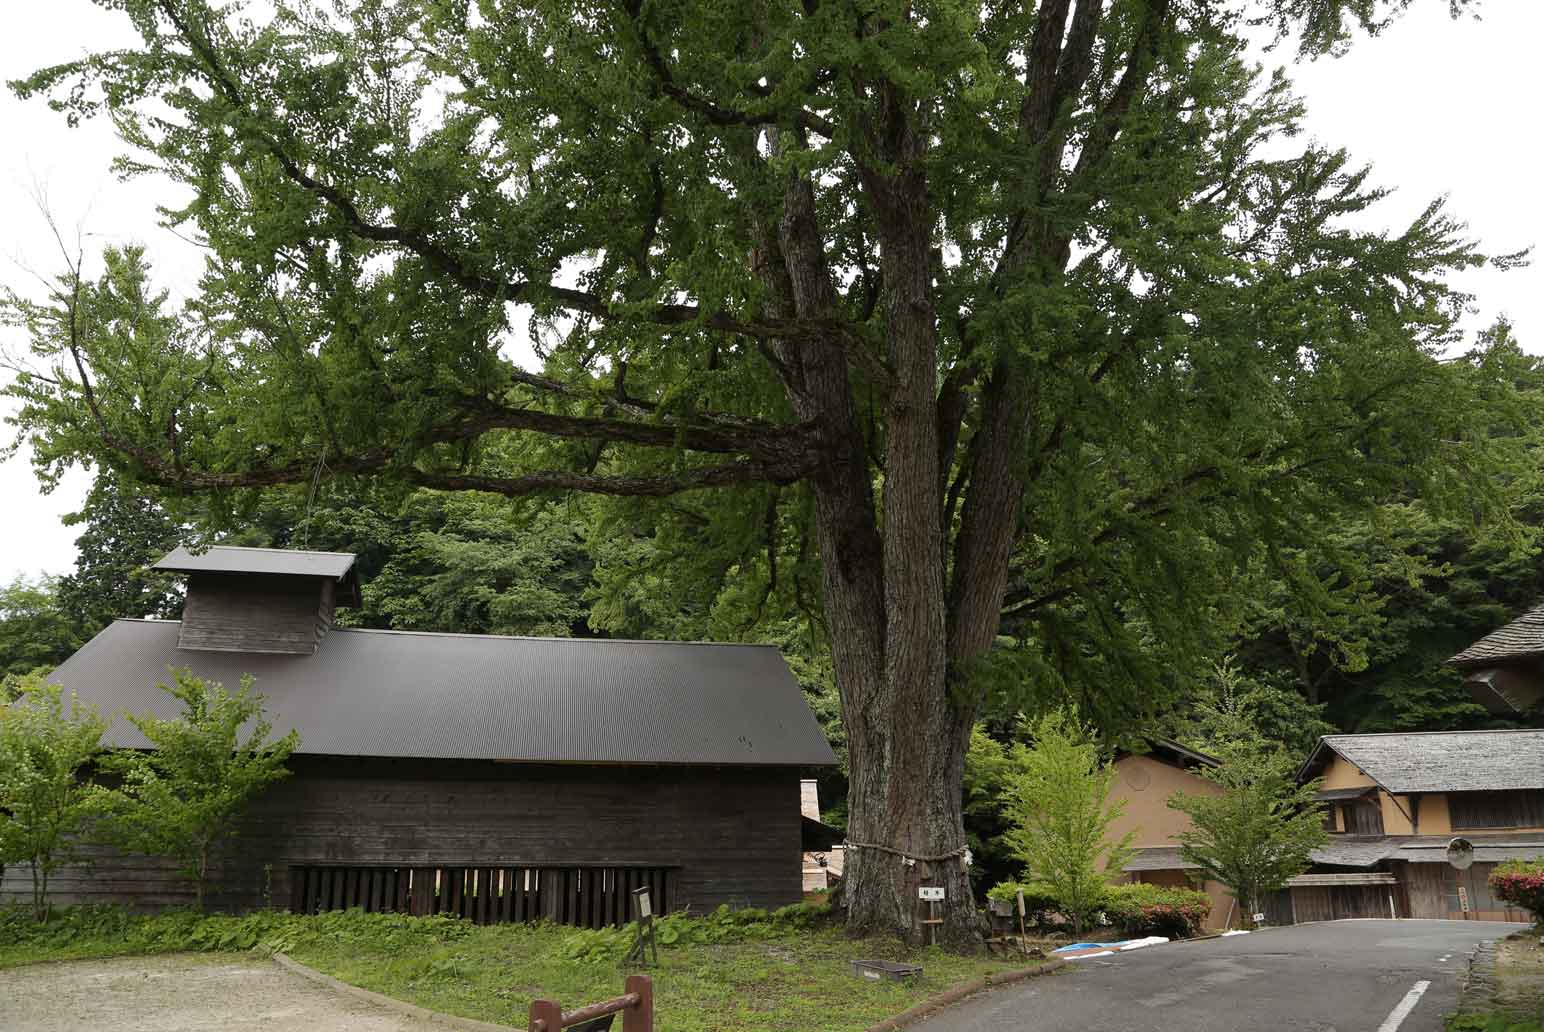 菅谷高殿外聳立的巨大桂樹（御神木） ，傳說中吹踏鞴之神「金屋子神」曾在此降臨。